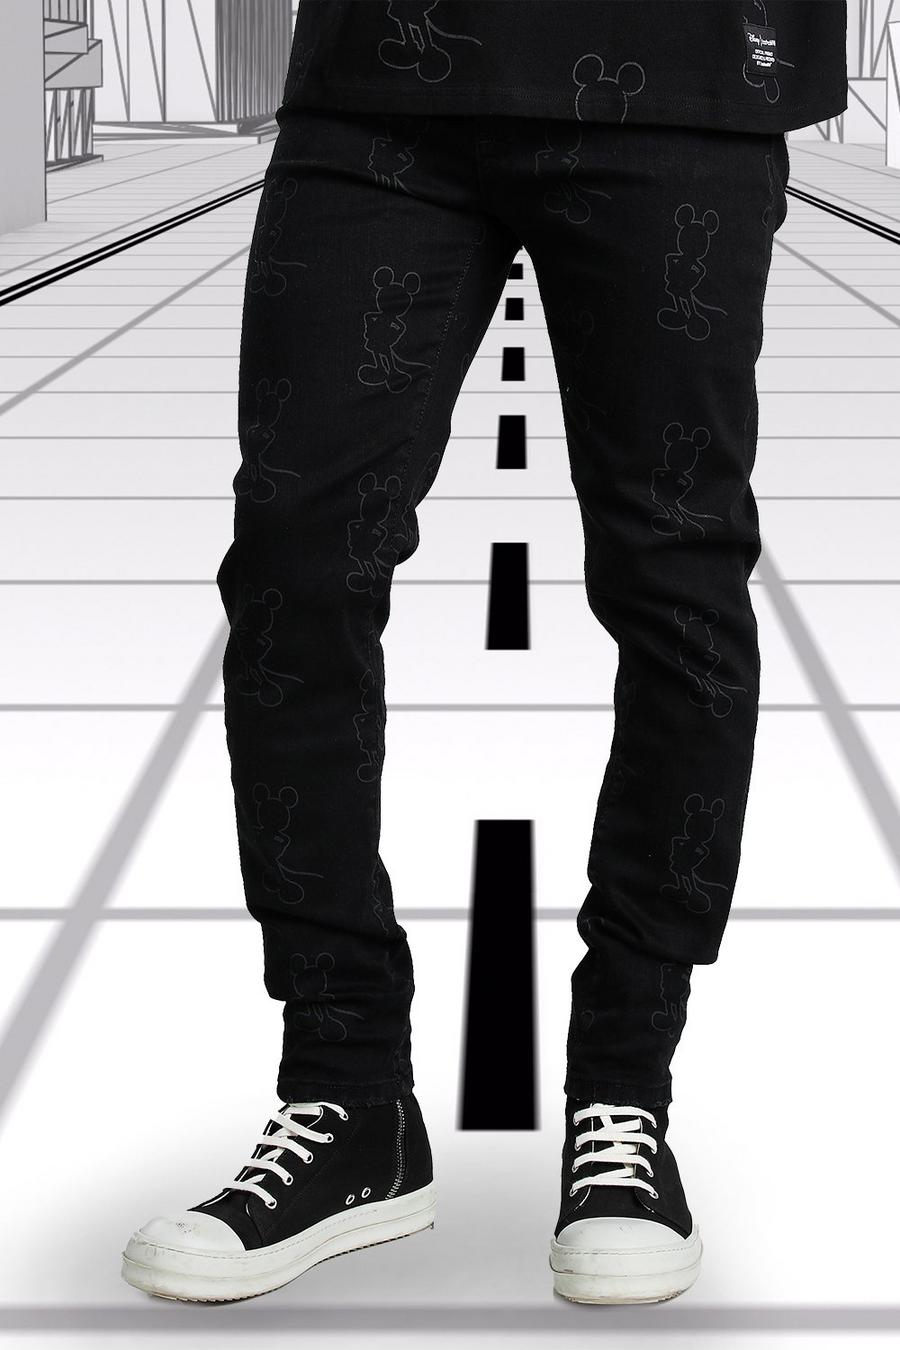 שחור סופר סקיני ג'ינס עם הדפס מיקי מאוס של Disney image number 1